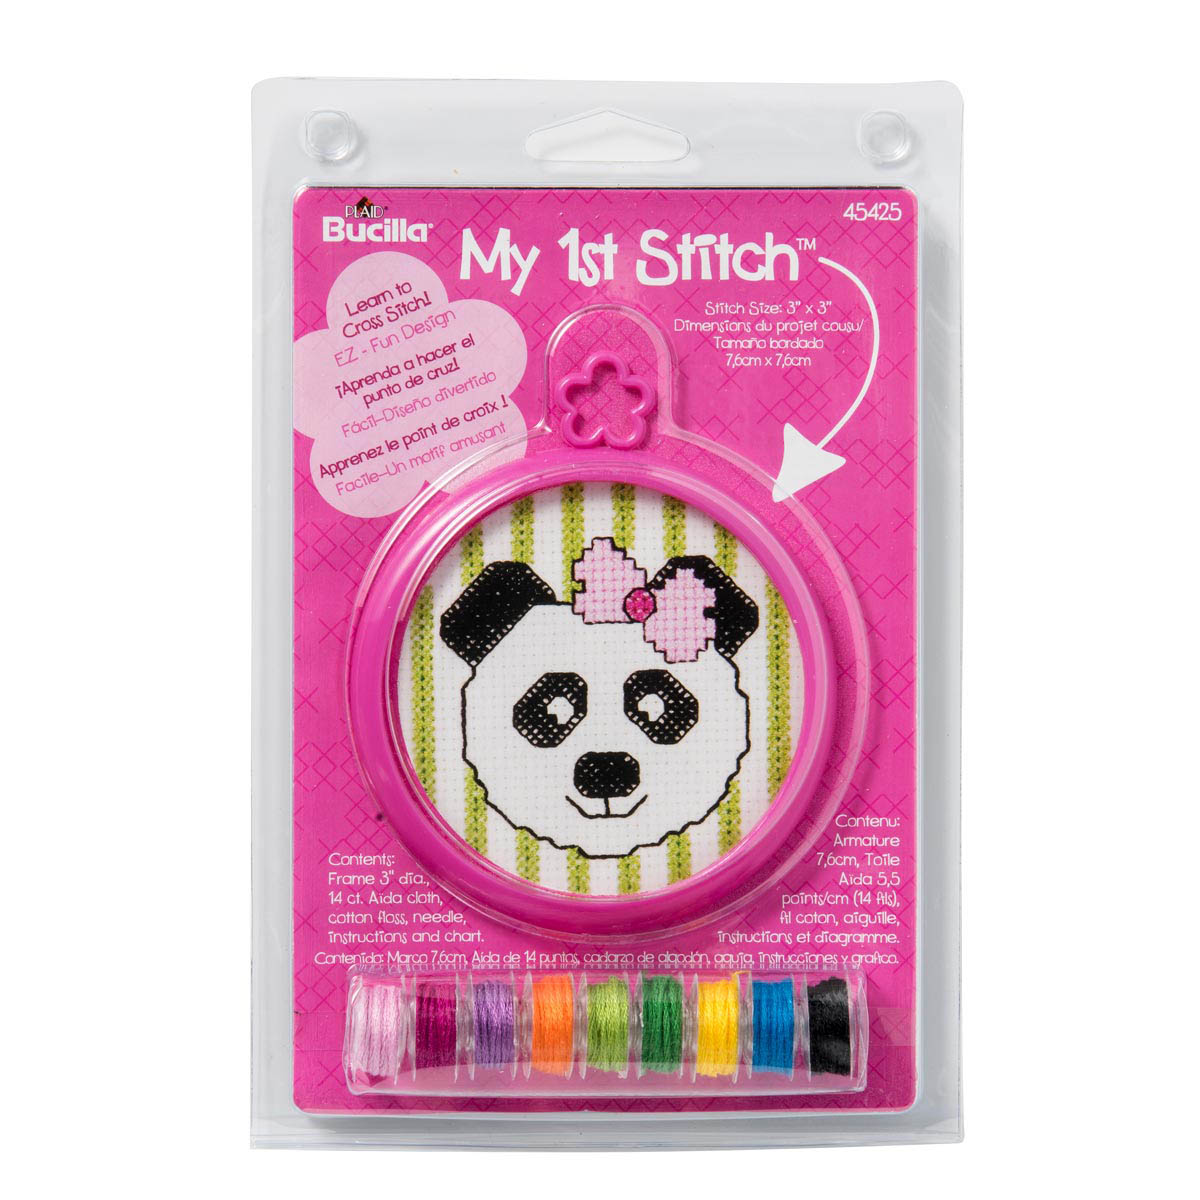 Bucilla ® My 1st Stitch™ - Counted Cross Stitch Kits - Mini - Panda - 45425